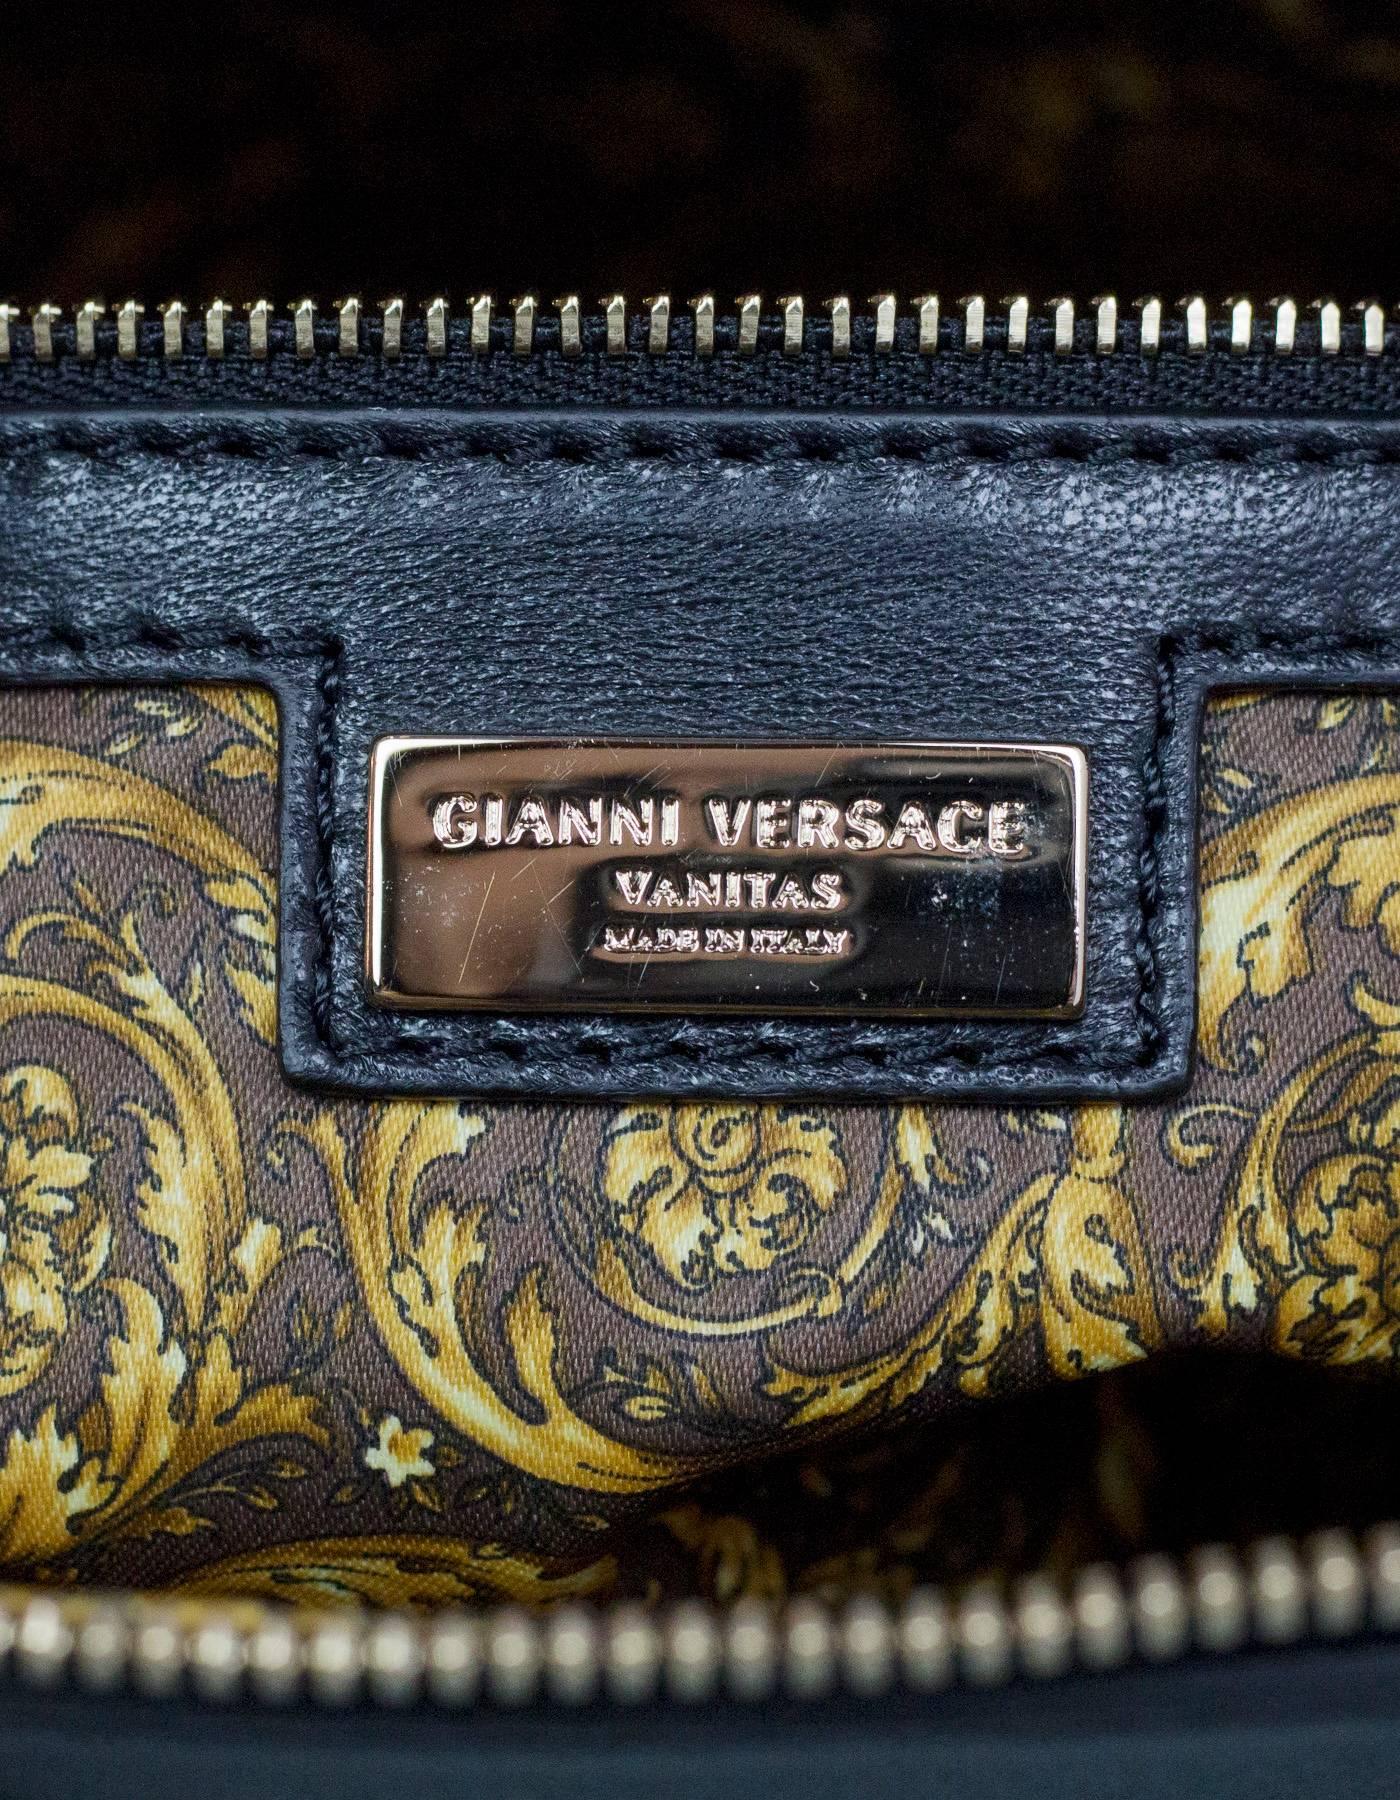 Black Versace Nappa Athena Barocco Quilted Vanitas Bag rt. $2, 675